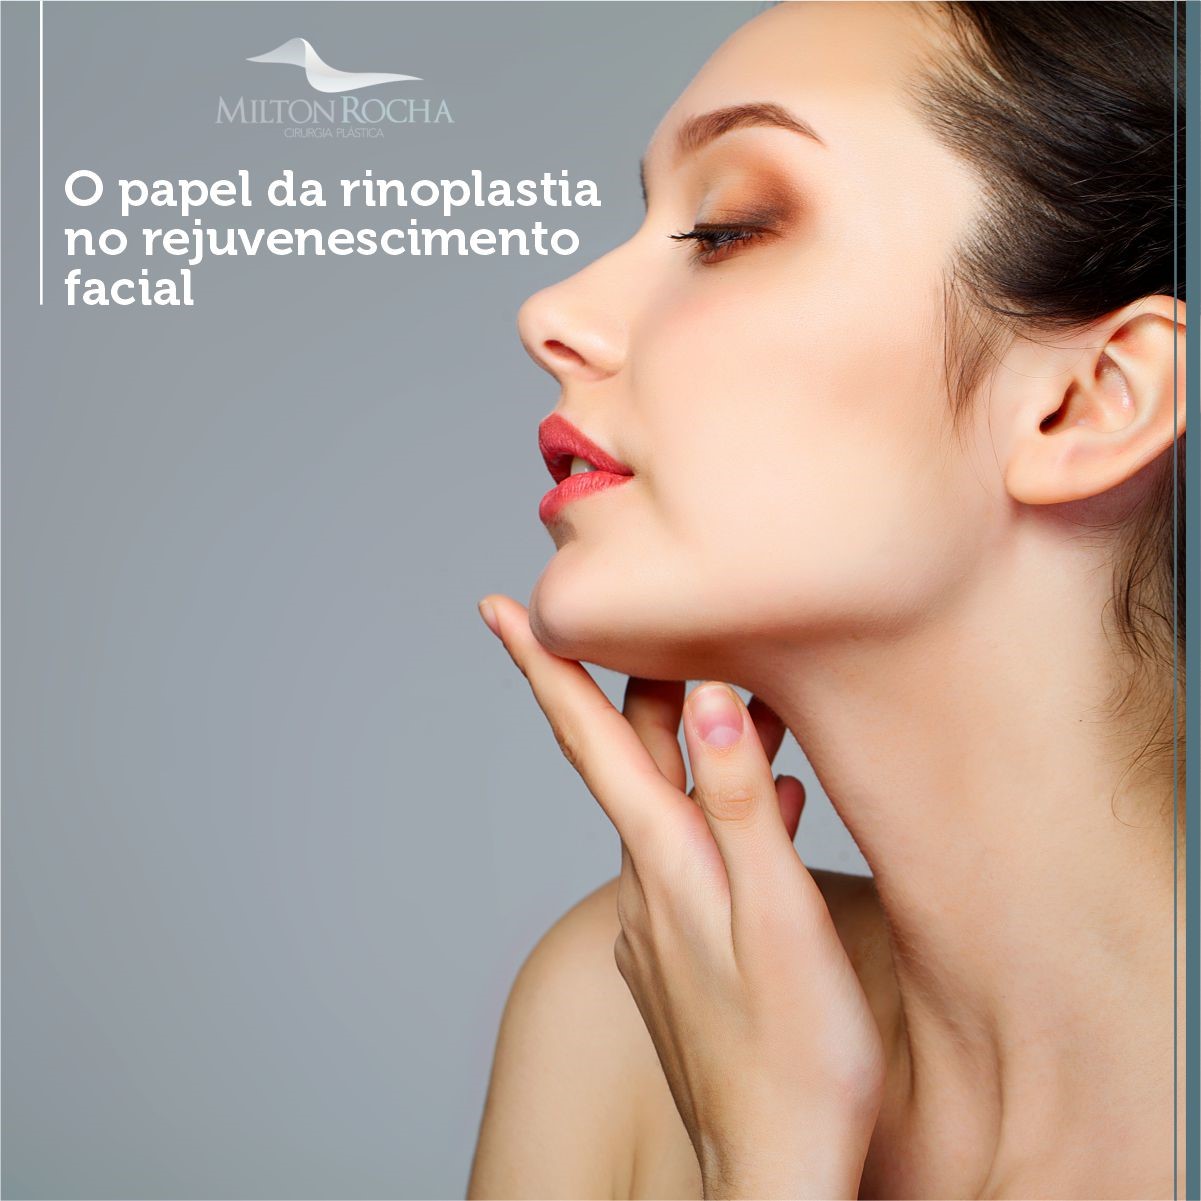 You are currently viewing Cirurgia Plástica Recife – O Papel da rinoplastia no rejuvenescimento facial